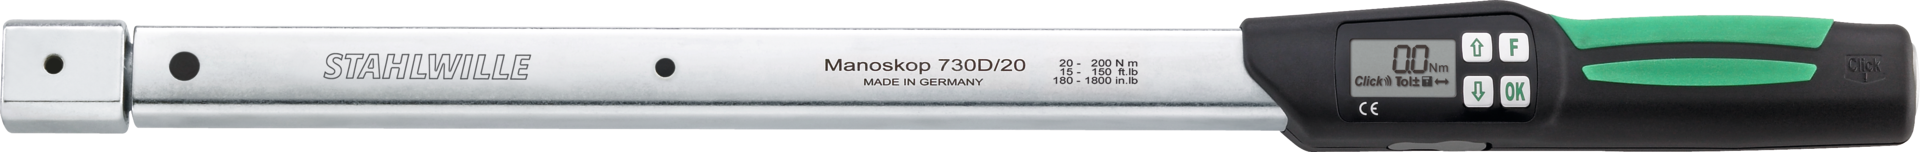 Drehmomentschlüssel elektronisch NANOSKOP® für Einsteckwerkzeuge 14x18 40-400Nm